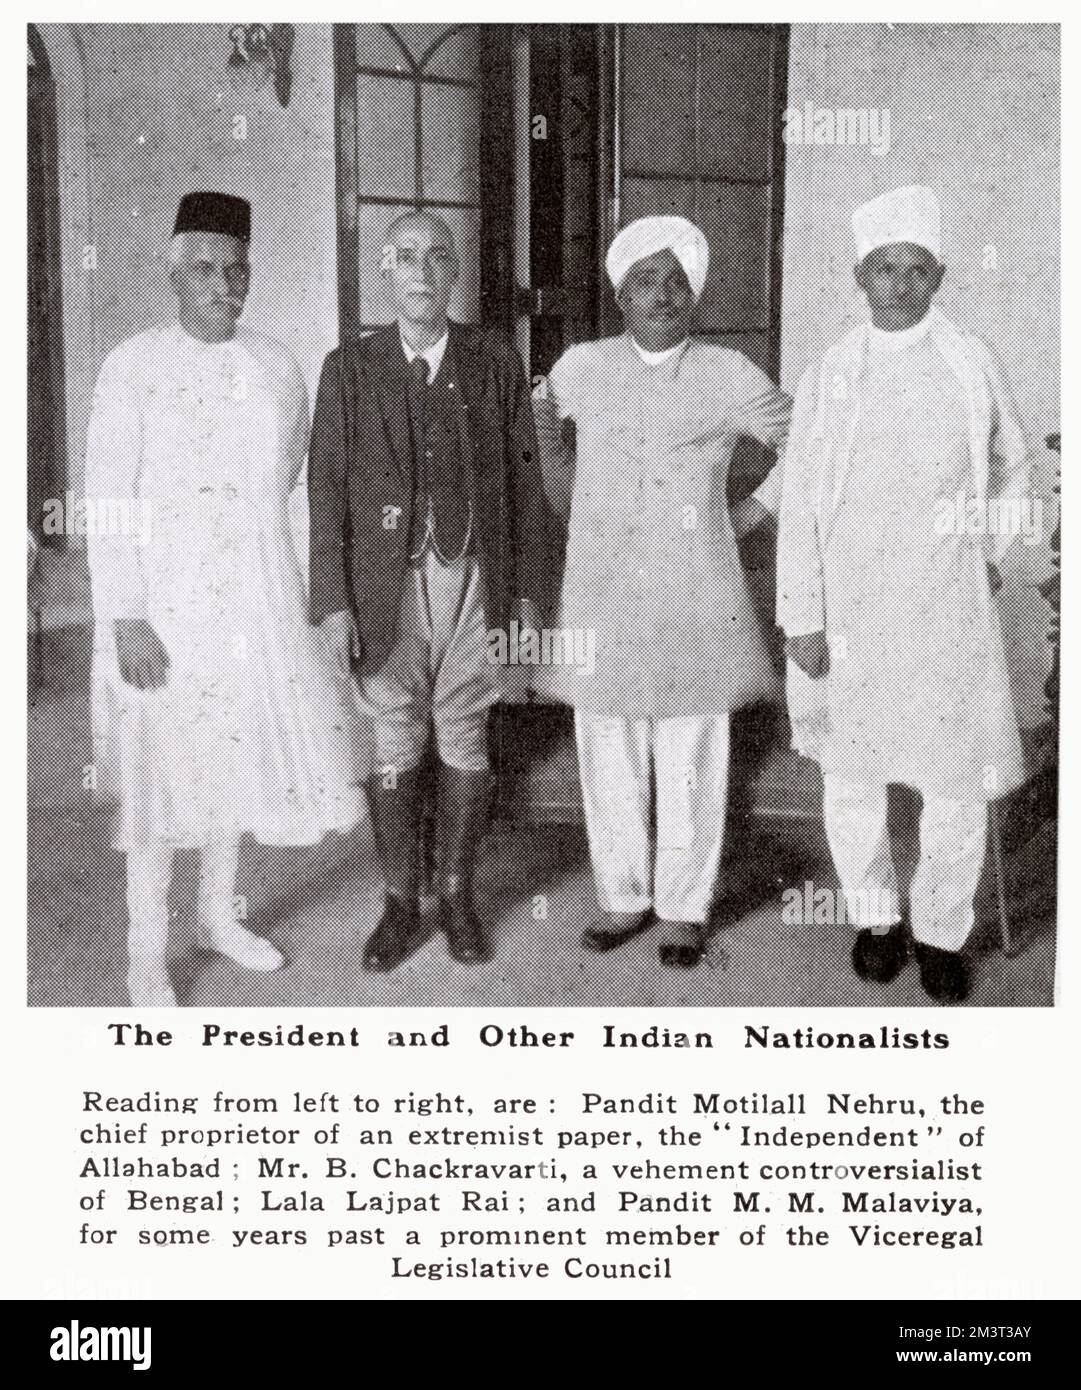 Les nationalistes indiens, notamment Pandit Motilal Nehru, M. B. Chackravarti, Lala Lajpat Rai et Pandit M. M. Malaviya. Banque D'Images